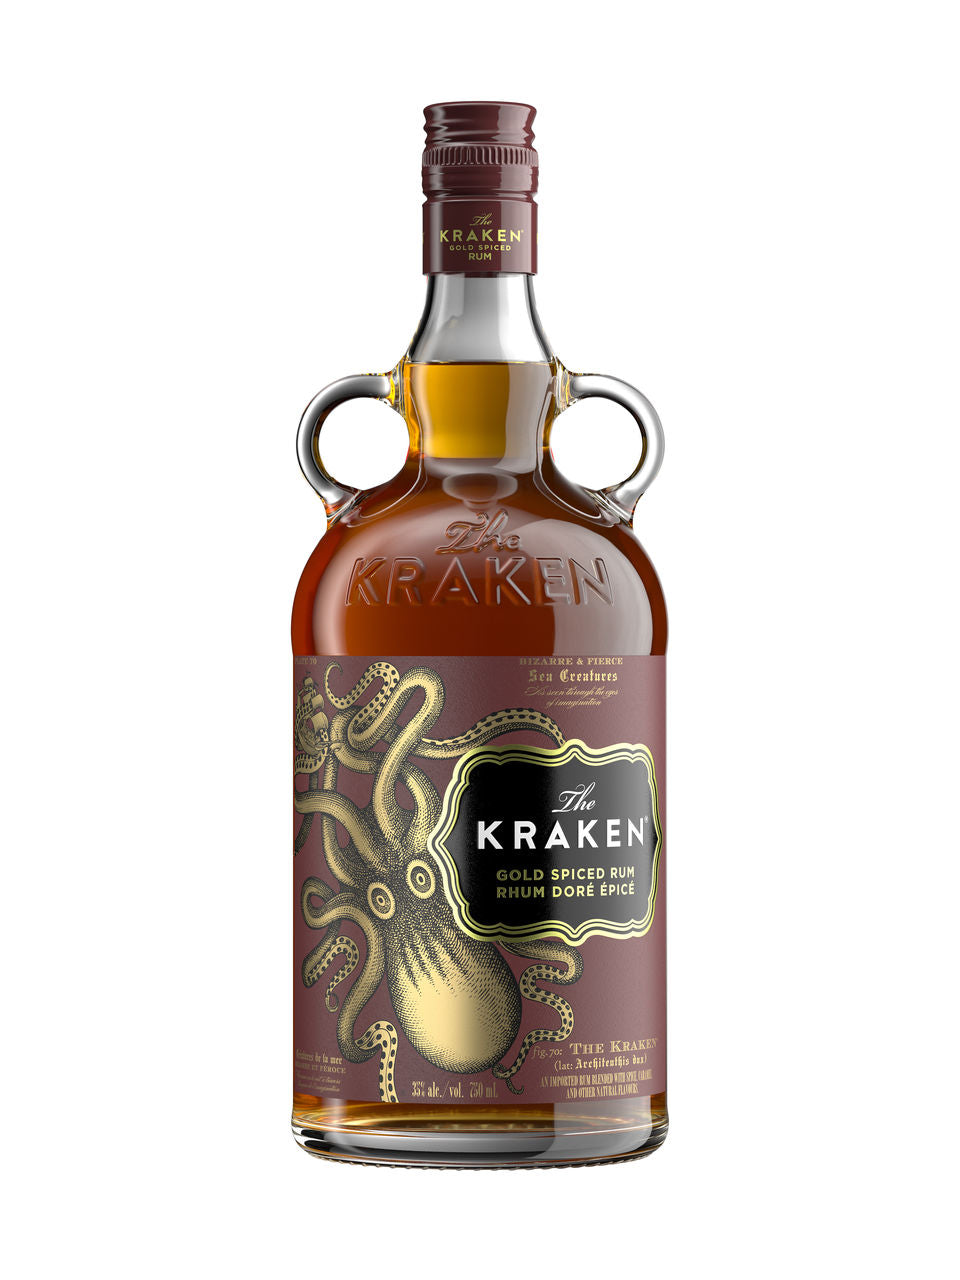 The Kraken Gold Spiced Rum 750 ml bottle